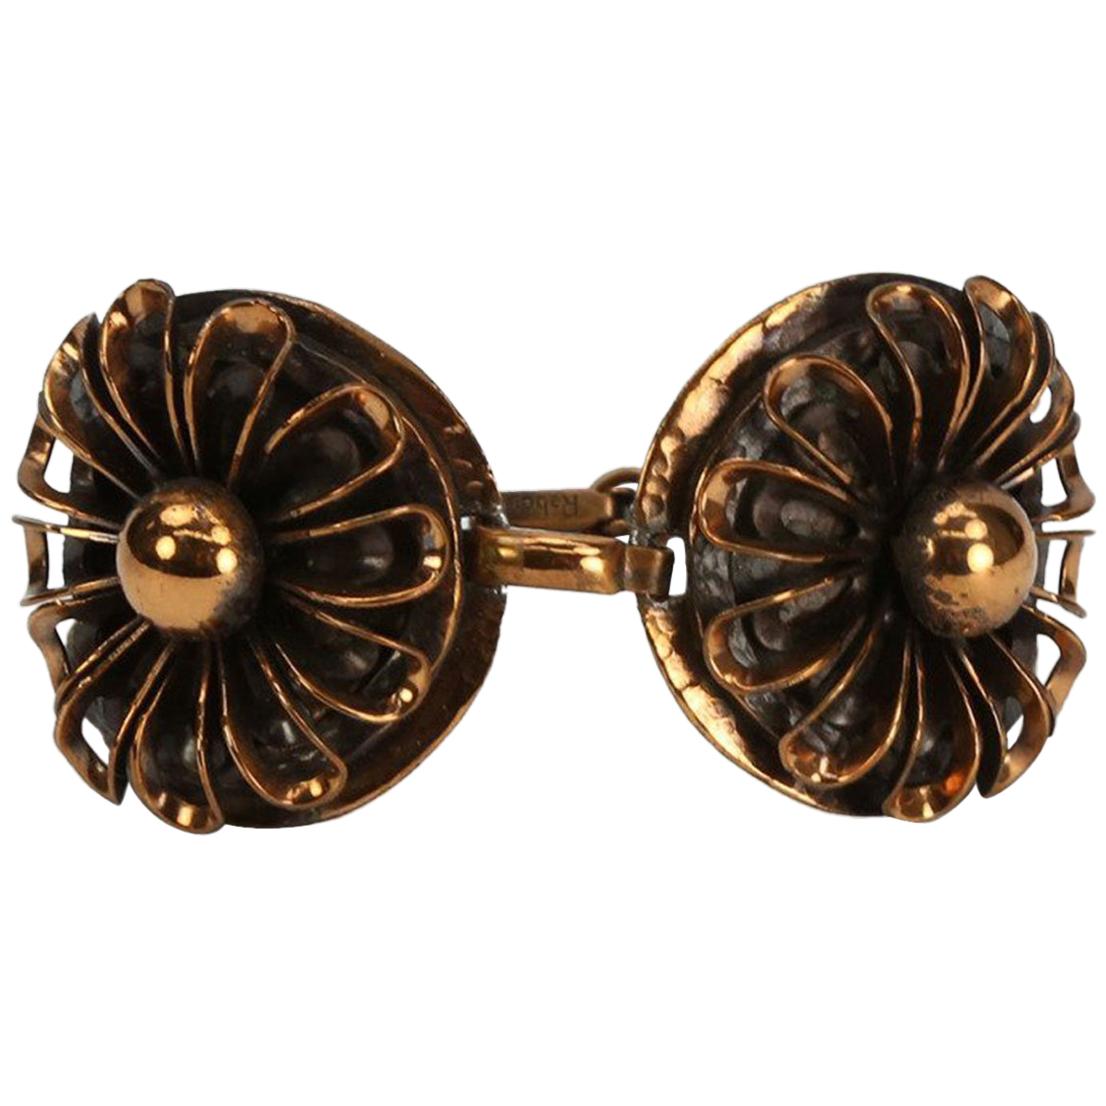  Modernist signed Rebajes Copper Flower Bracelet For Sale